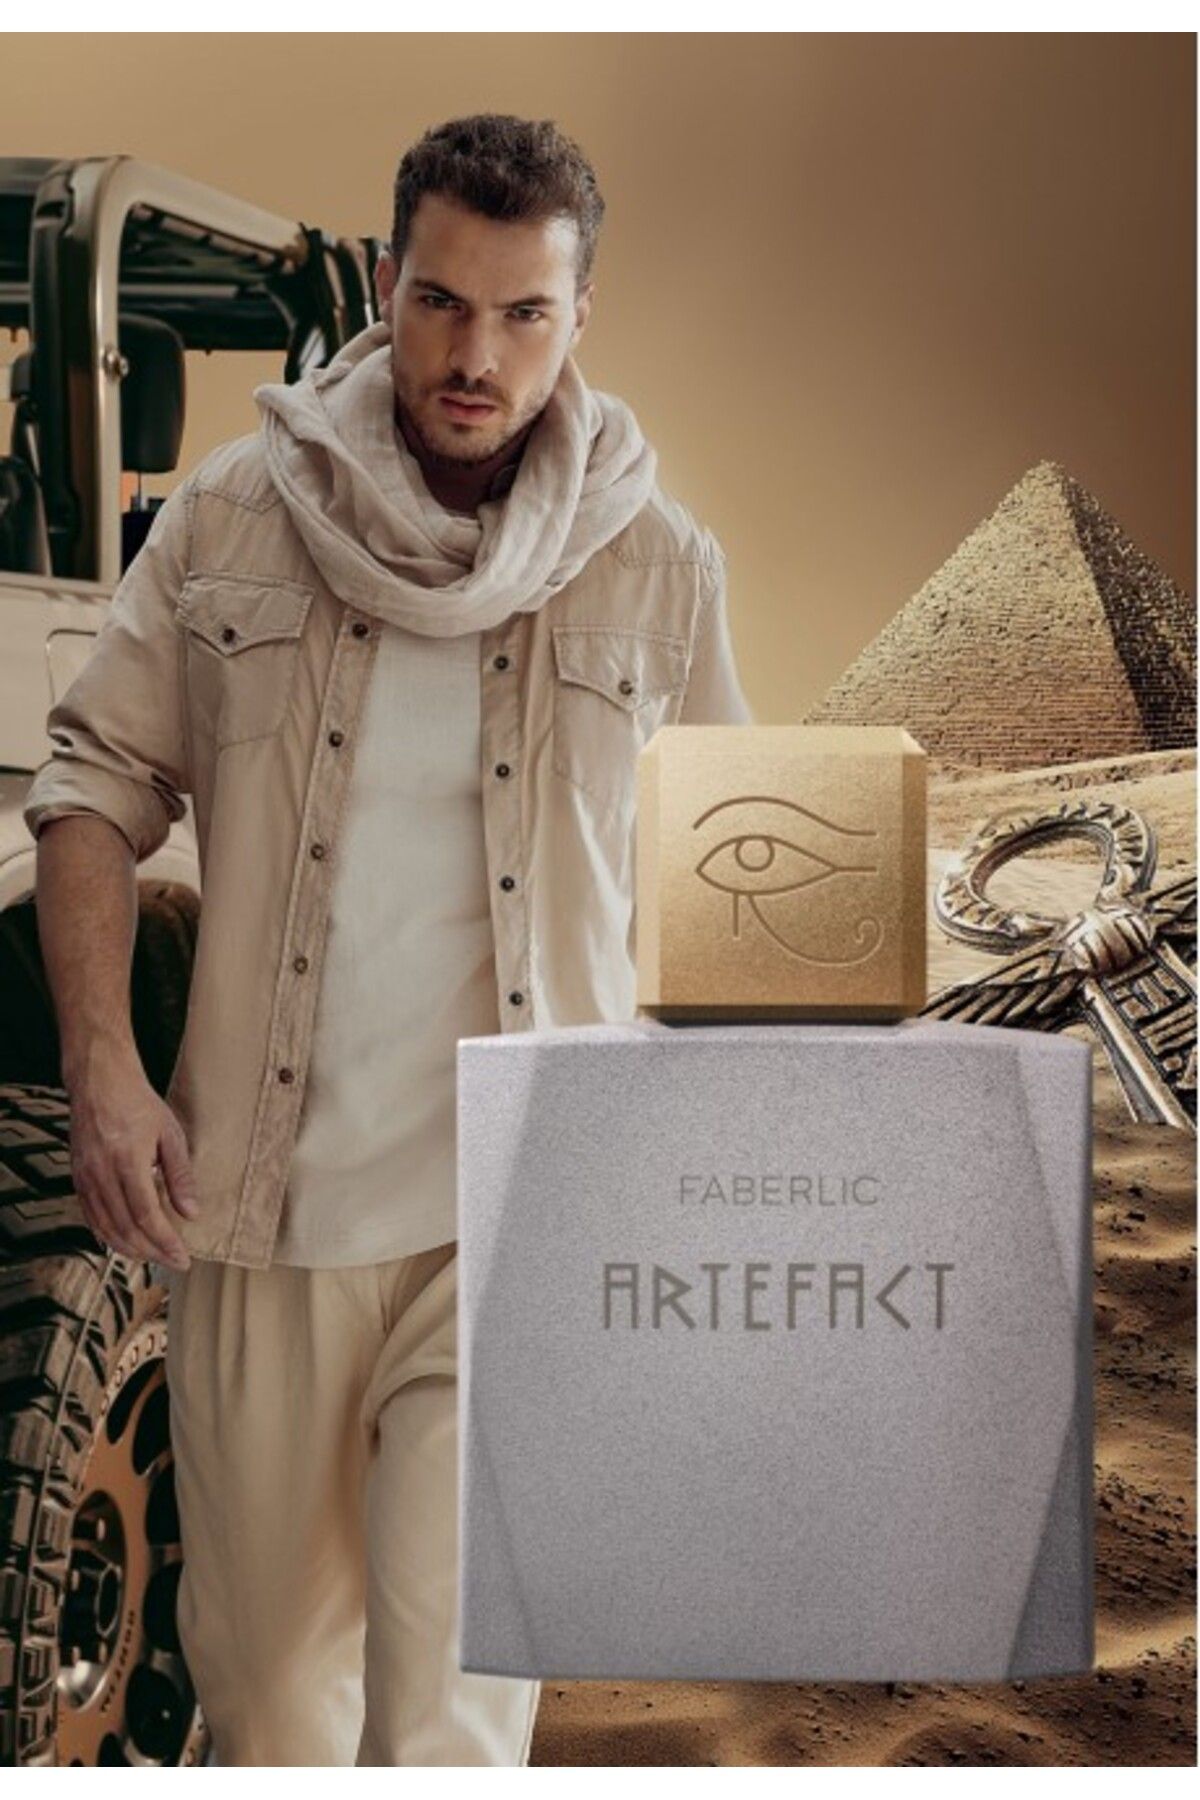 Faberlic FABERLİC Erkek EDT Parfüm Artefact